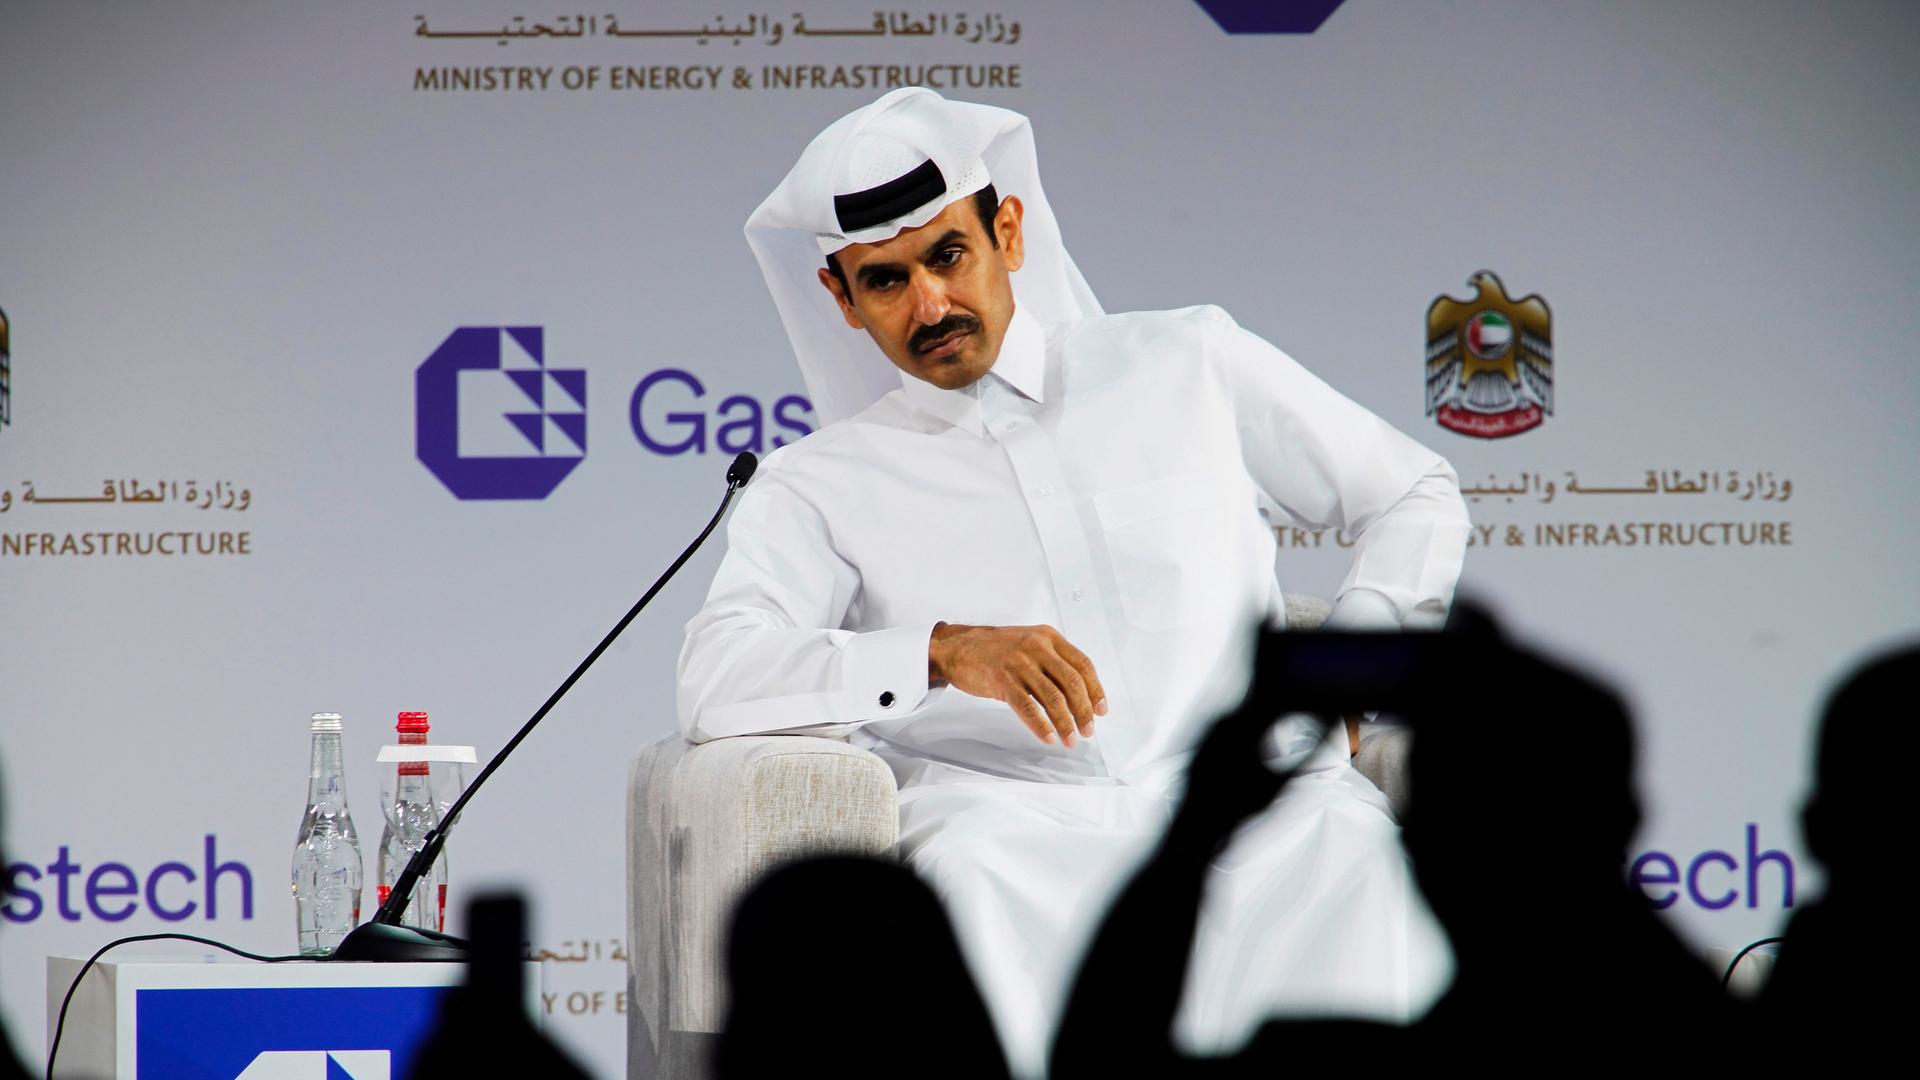 Katars Energieminister al-Kaabi sitzt in einer Pressekonferenz hinter einem Mikrofon.